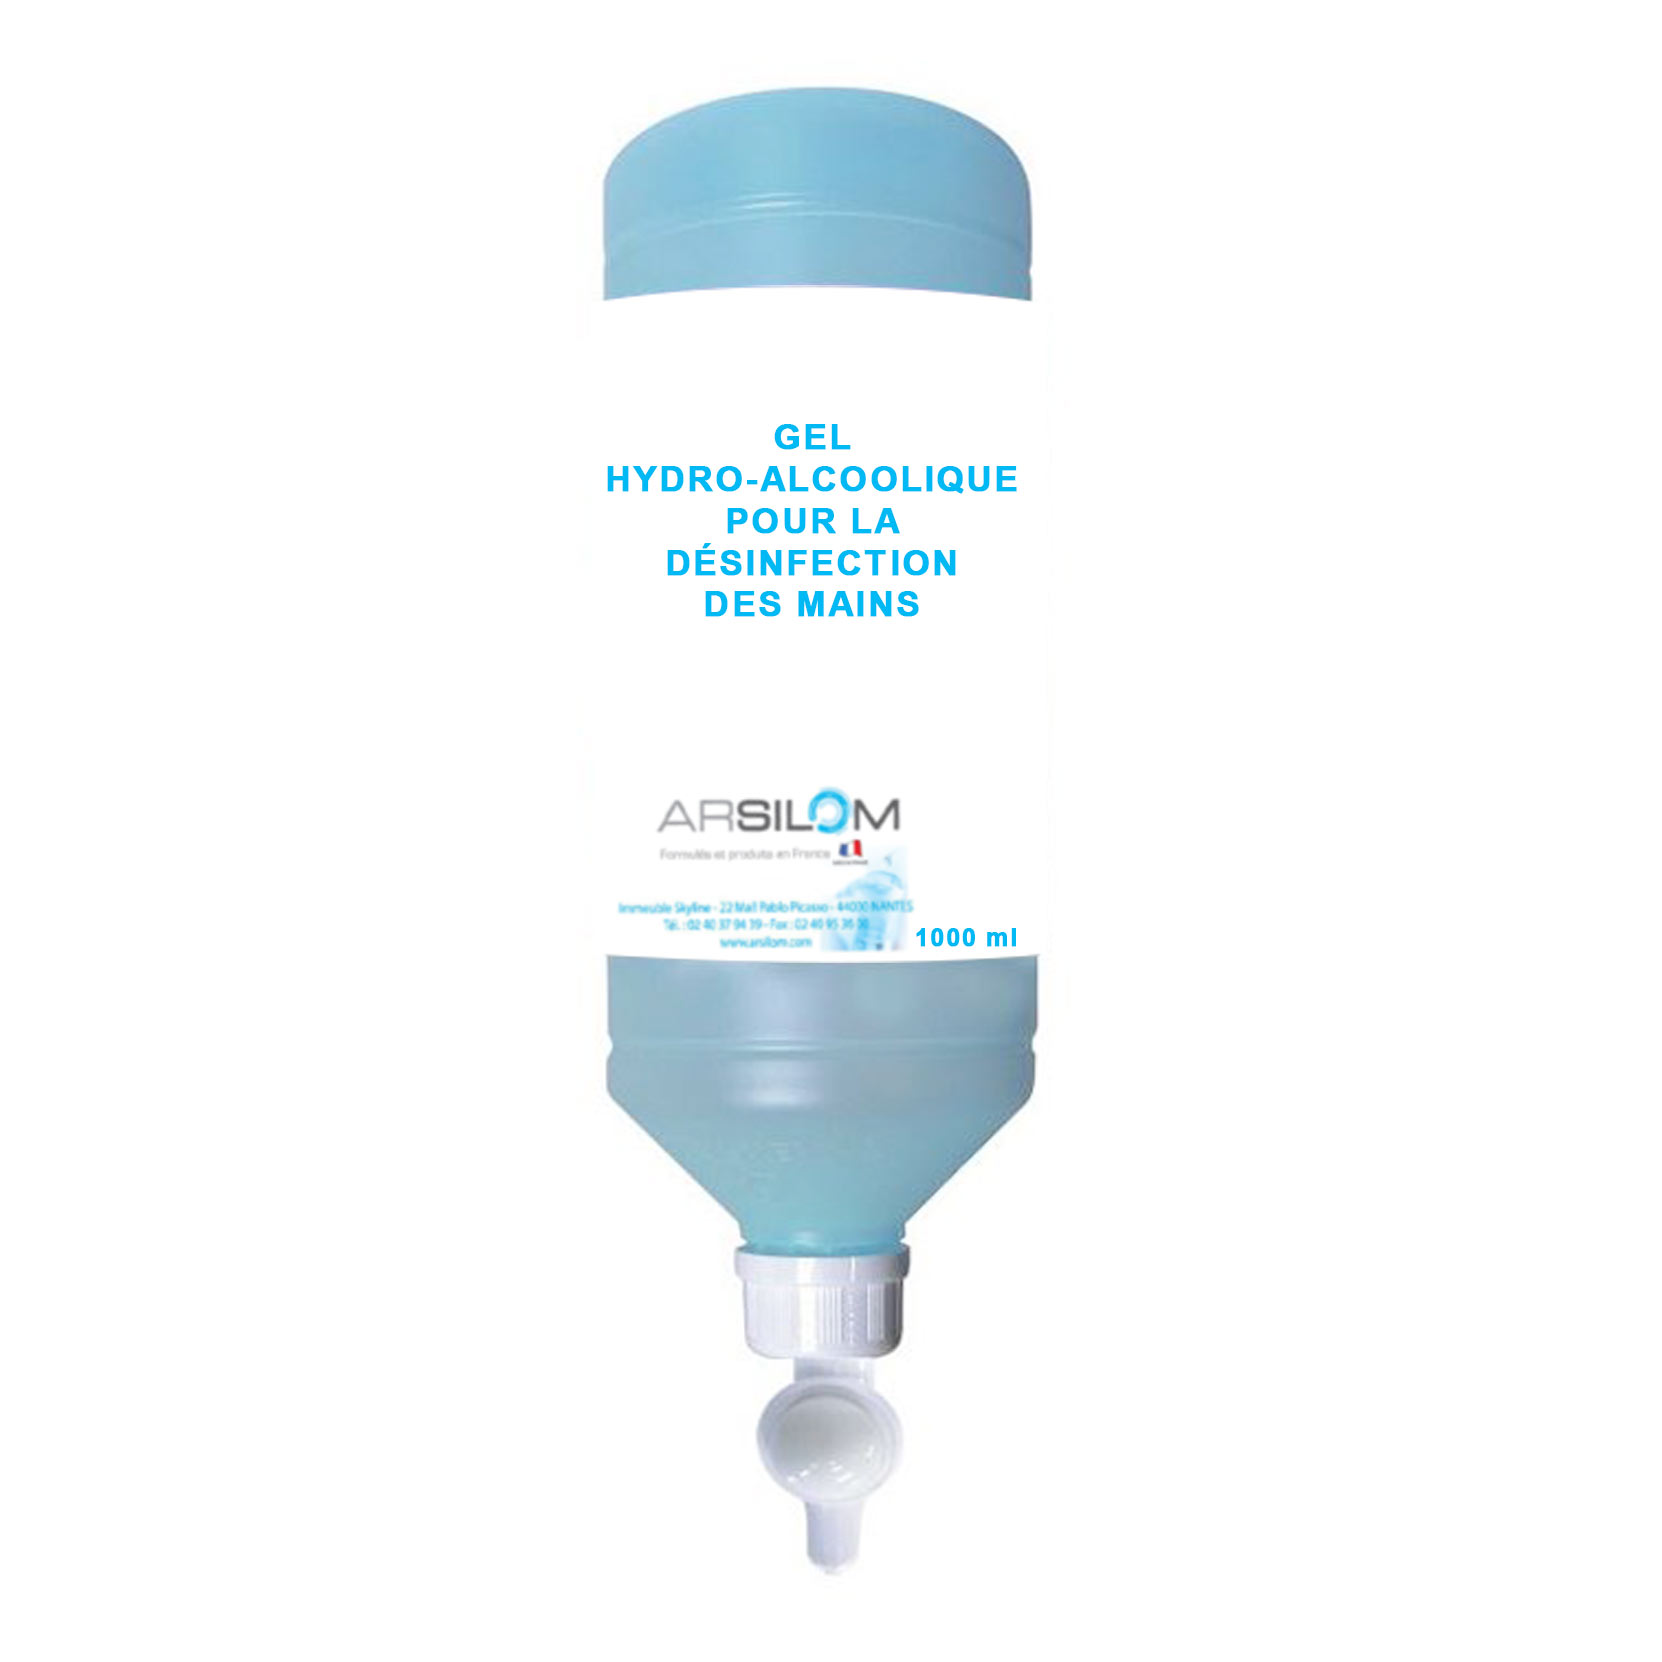 flacon gel hydroalcoolique arsilom